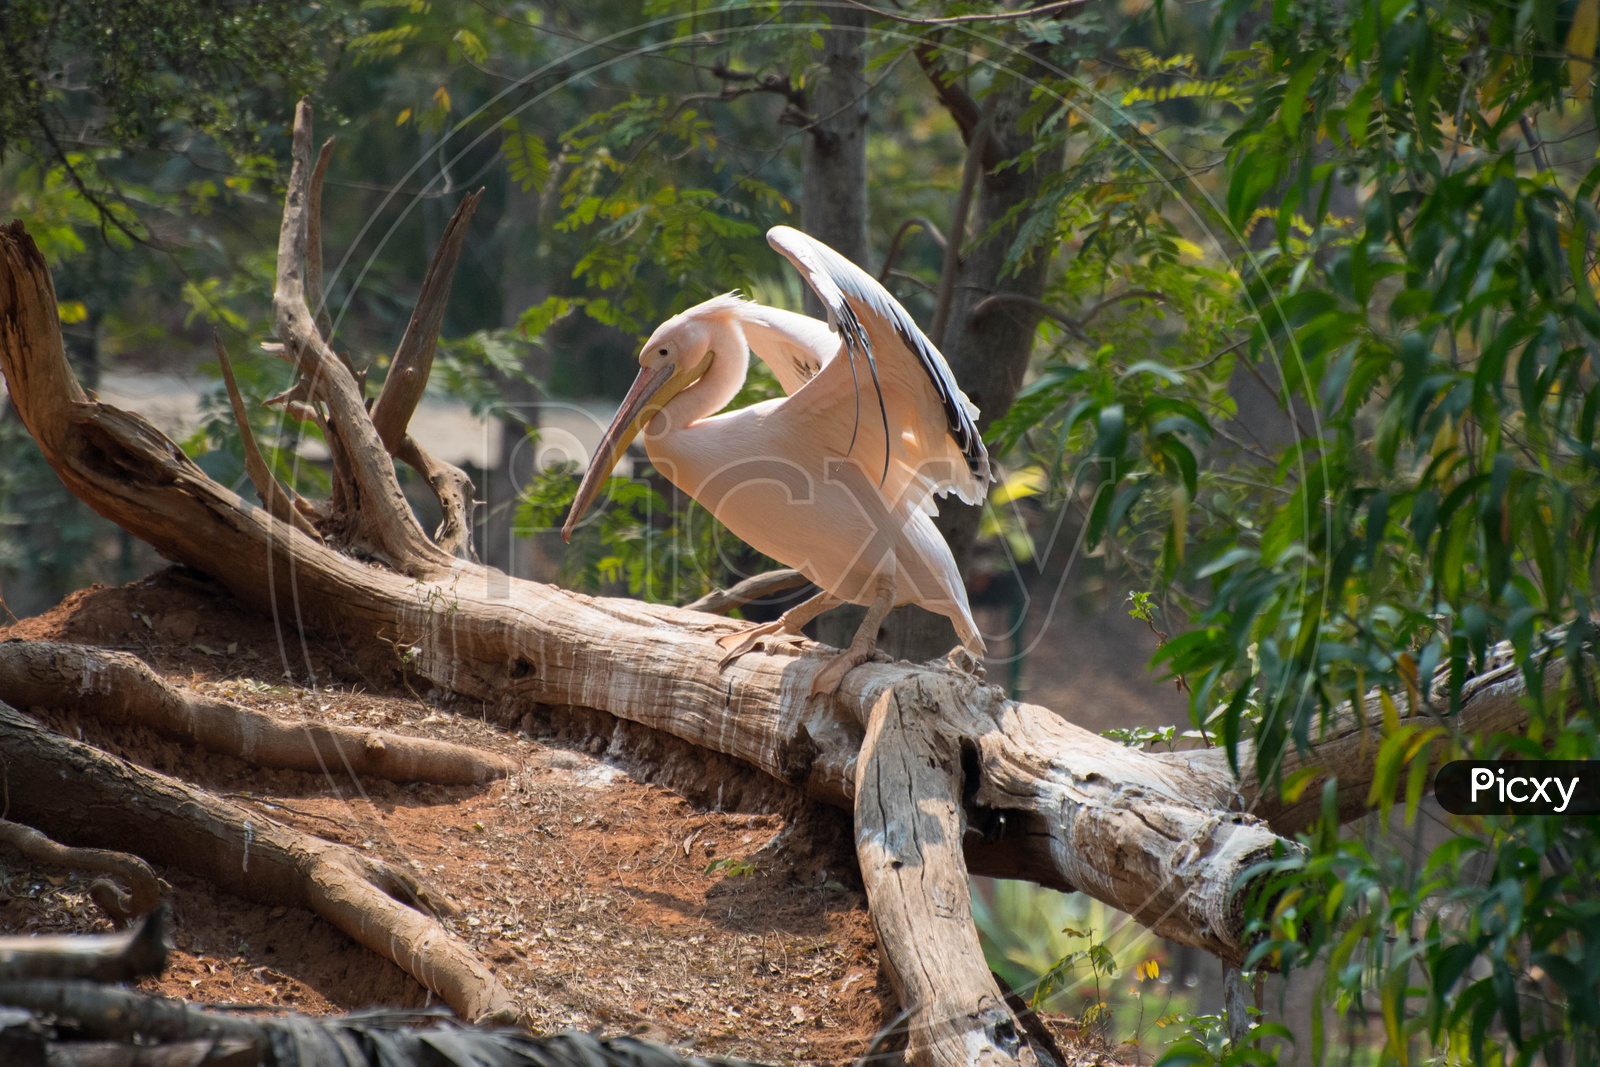 Rose Pelican